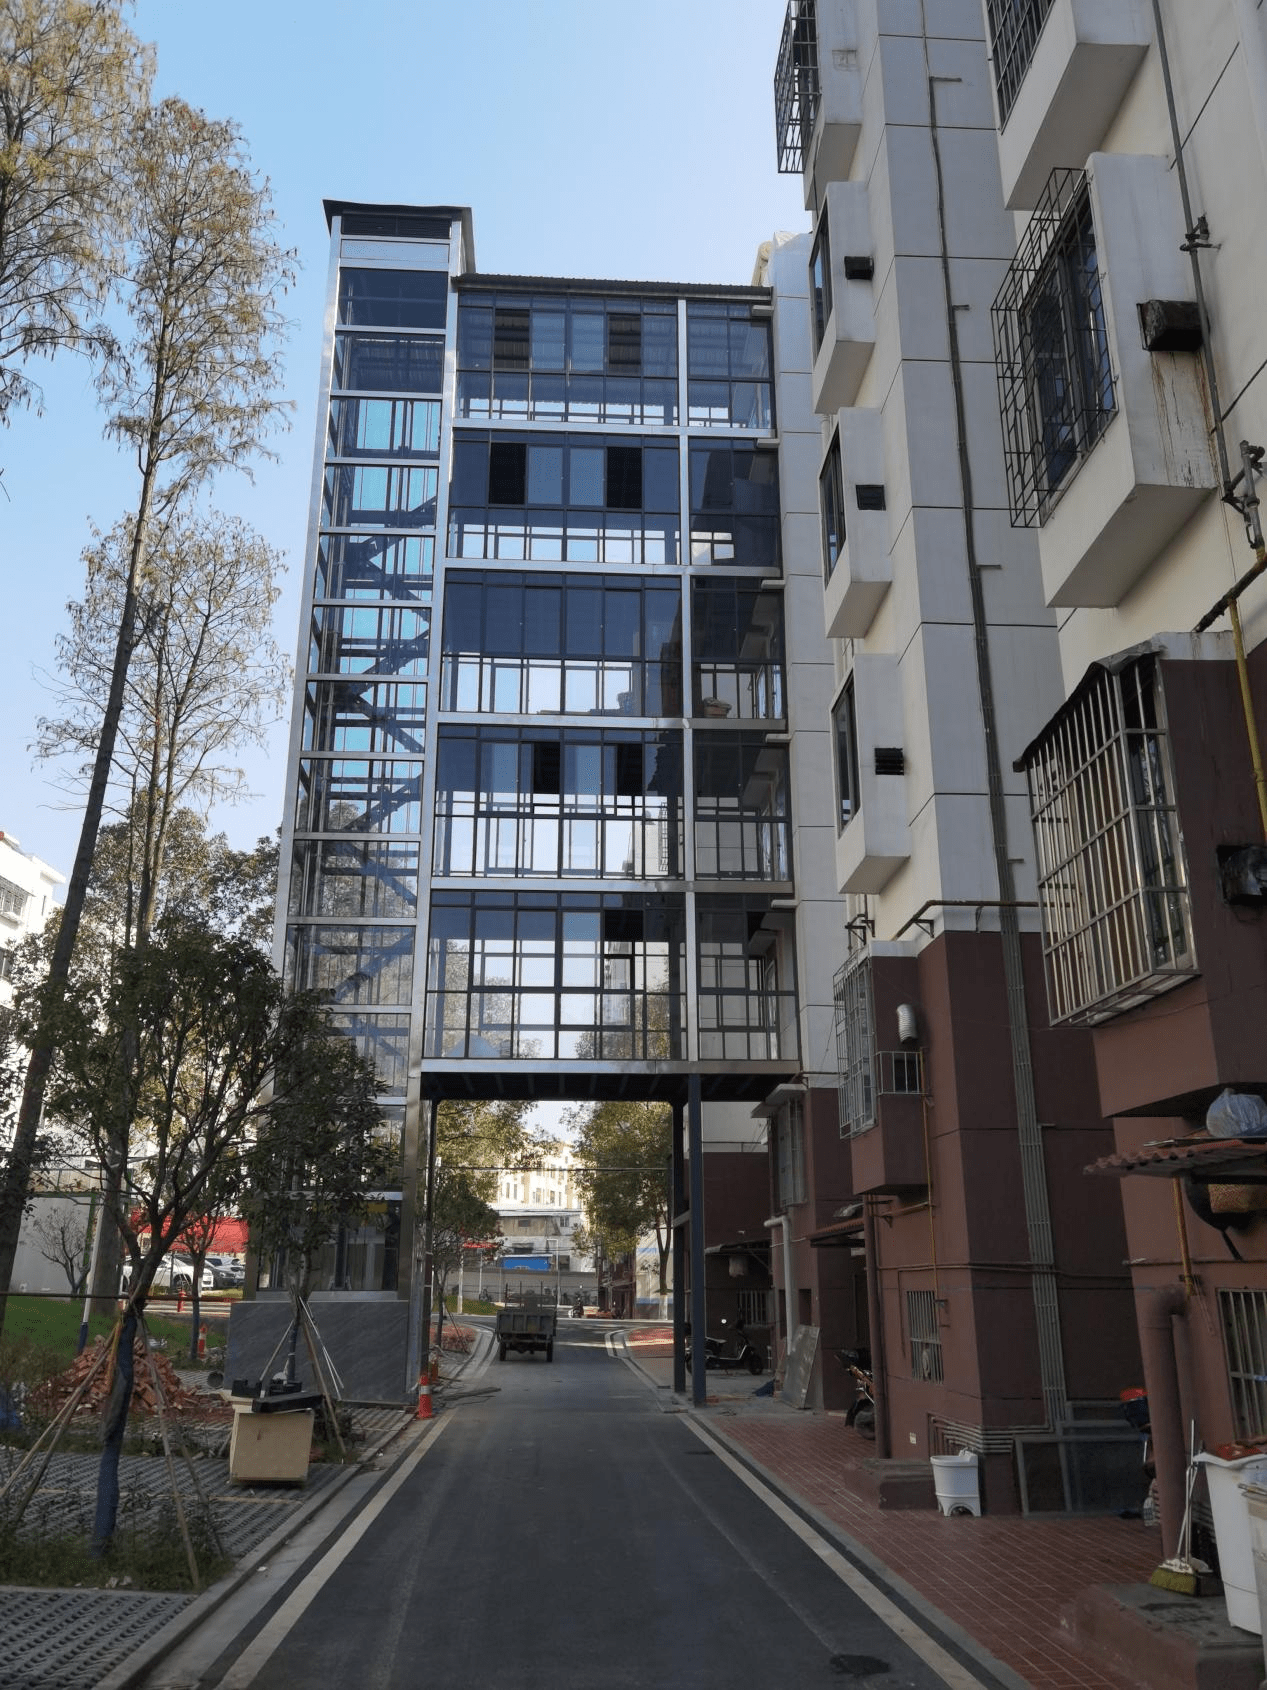 梯高居民幸福感 石首市创新推进老旧小区加装电梯工作